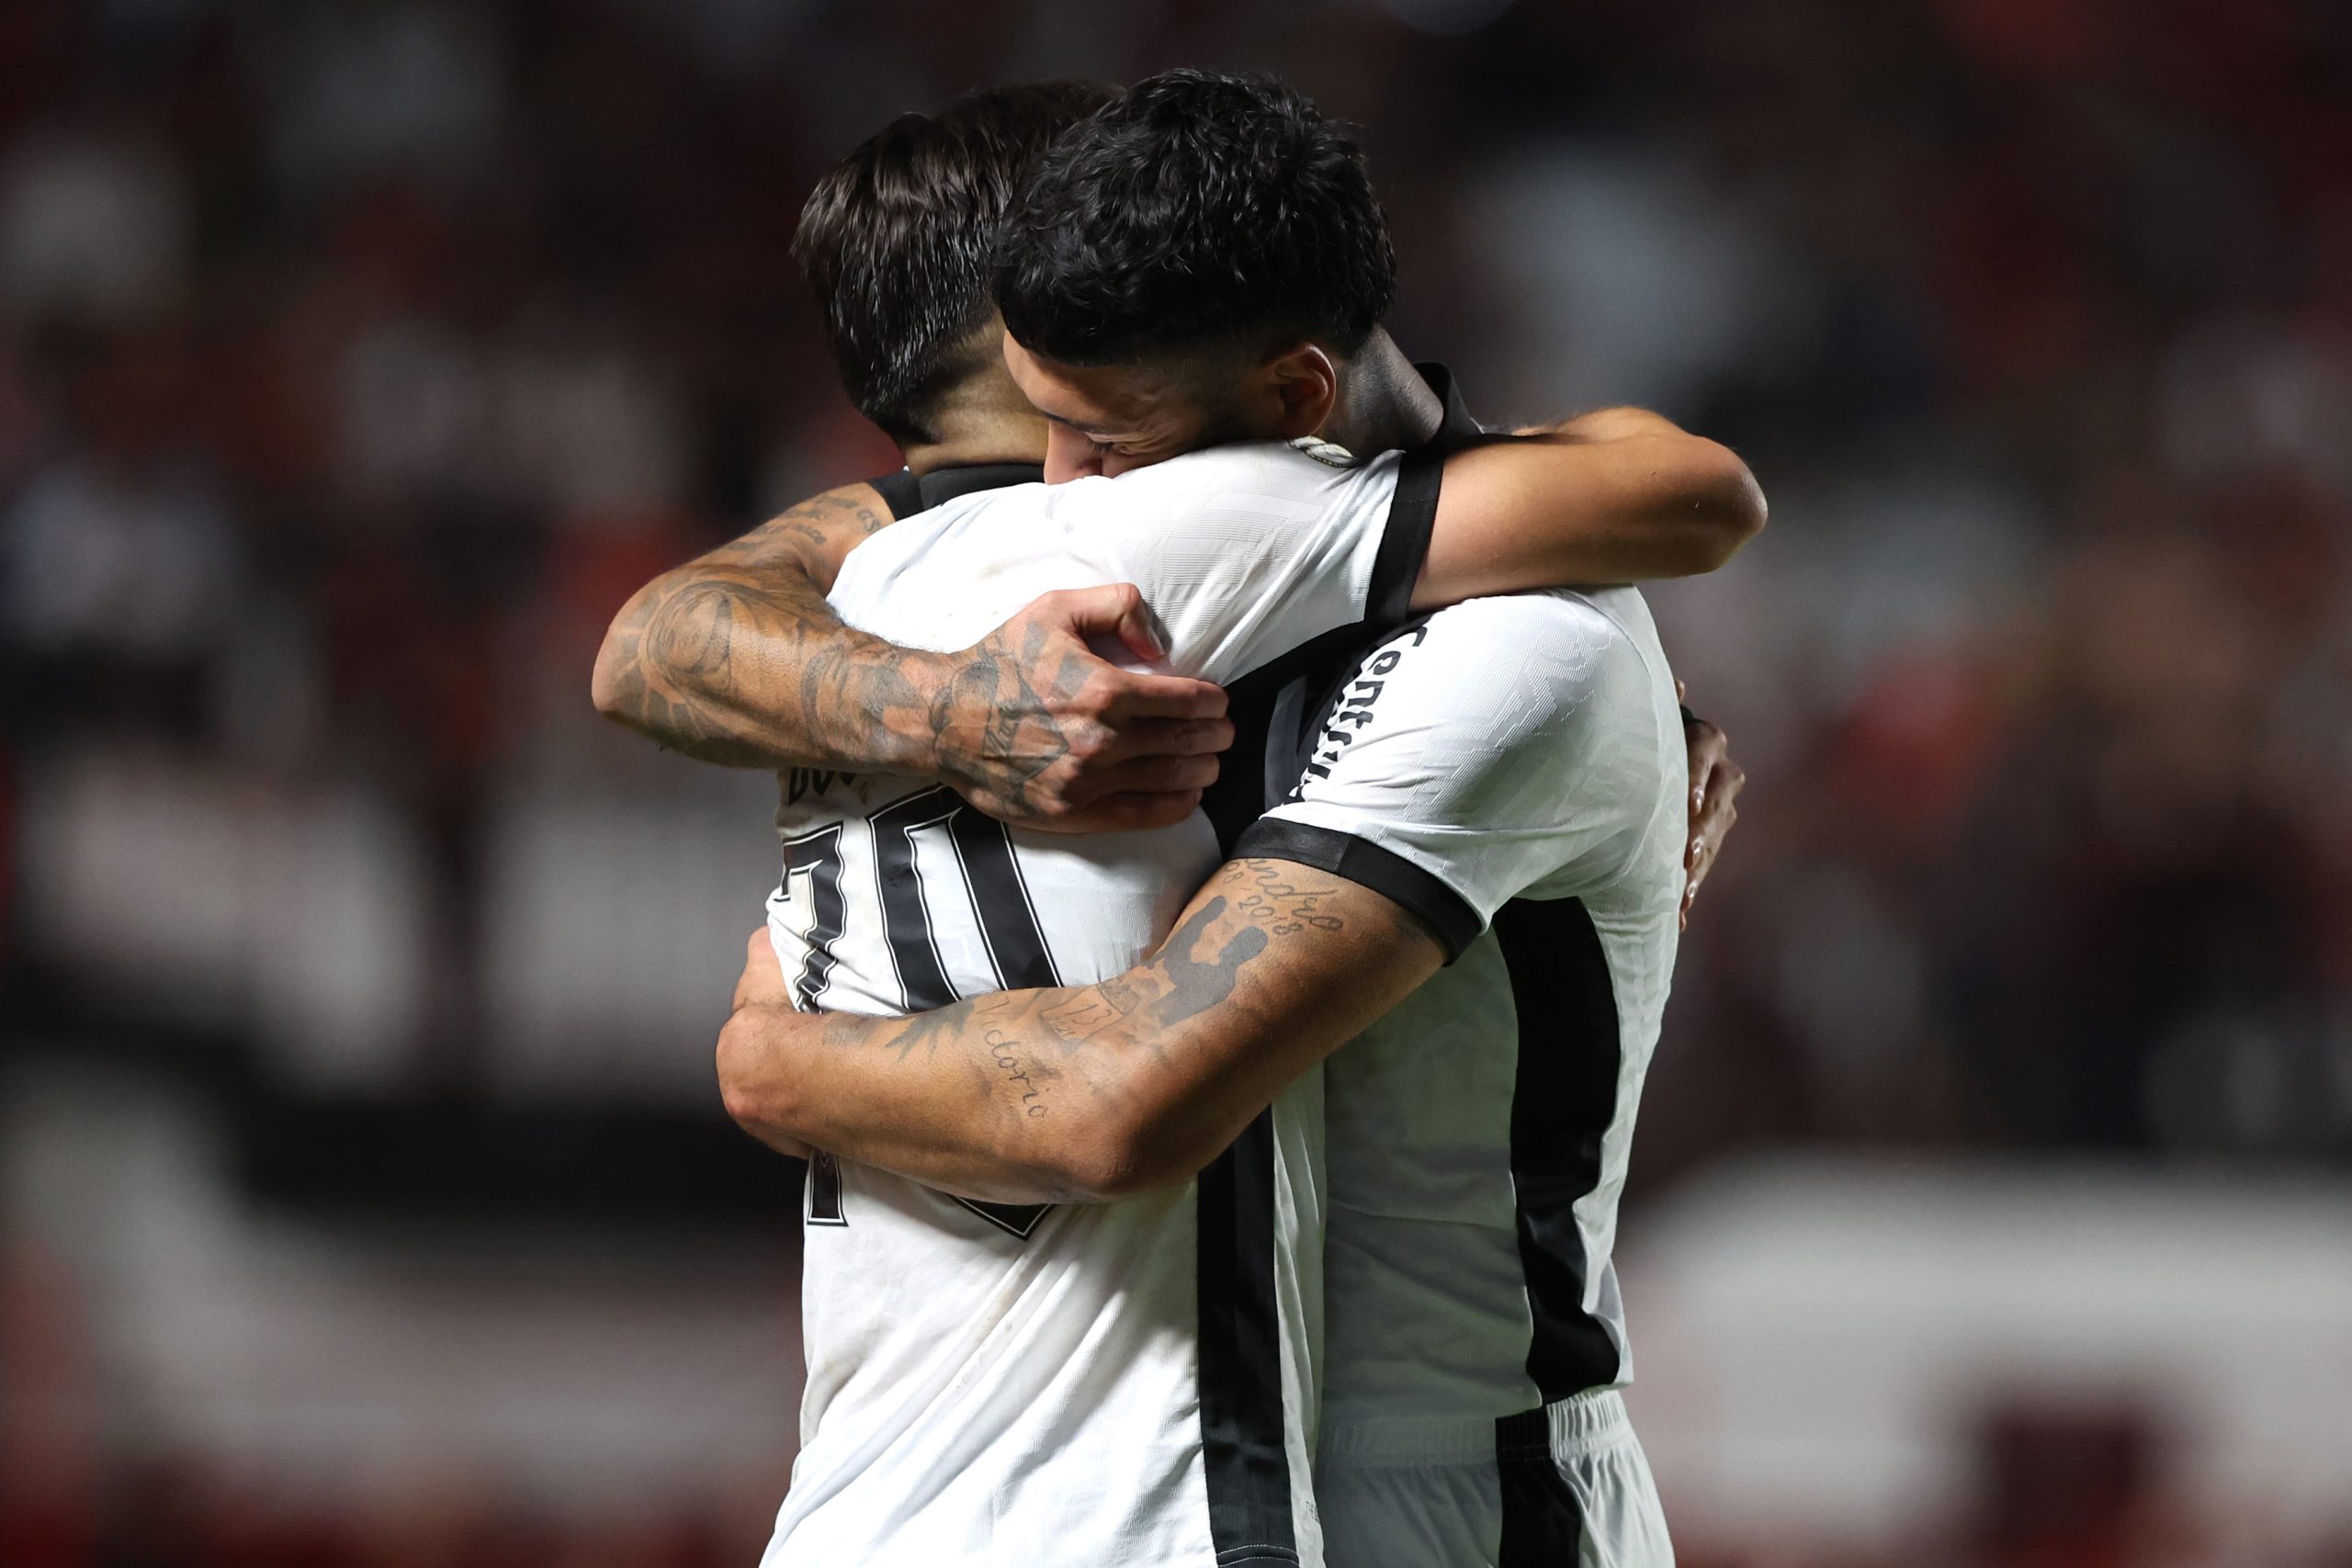 Romero e Barboza comemorando vitória. (Foto: Vítor Silva/Botafogo)